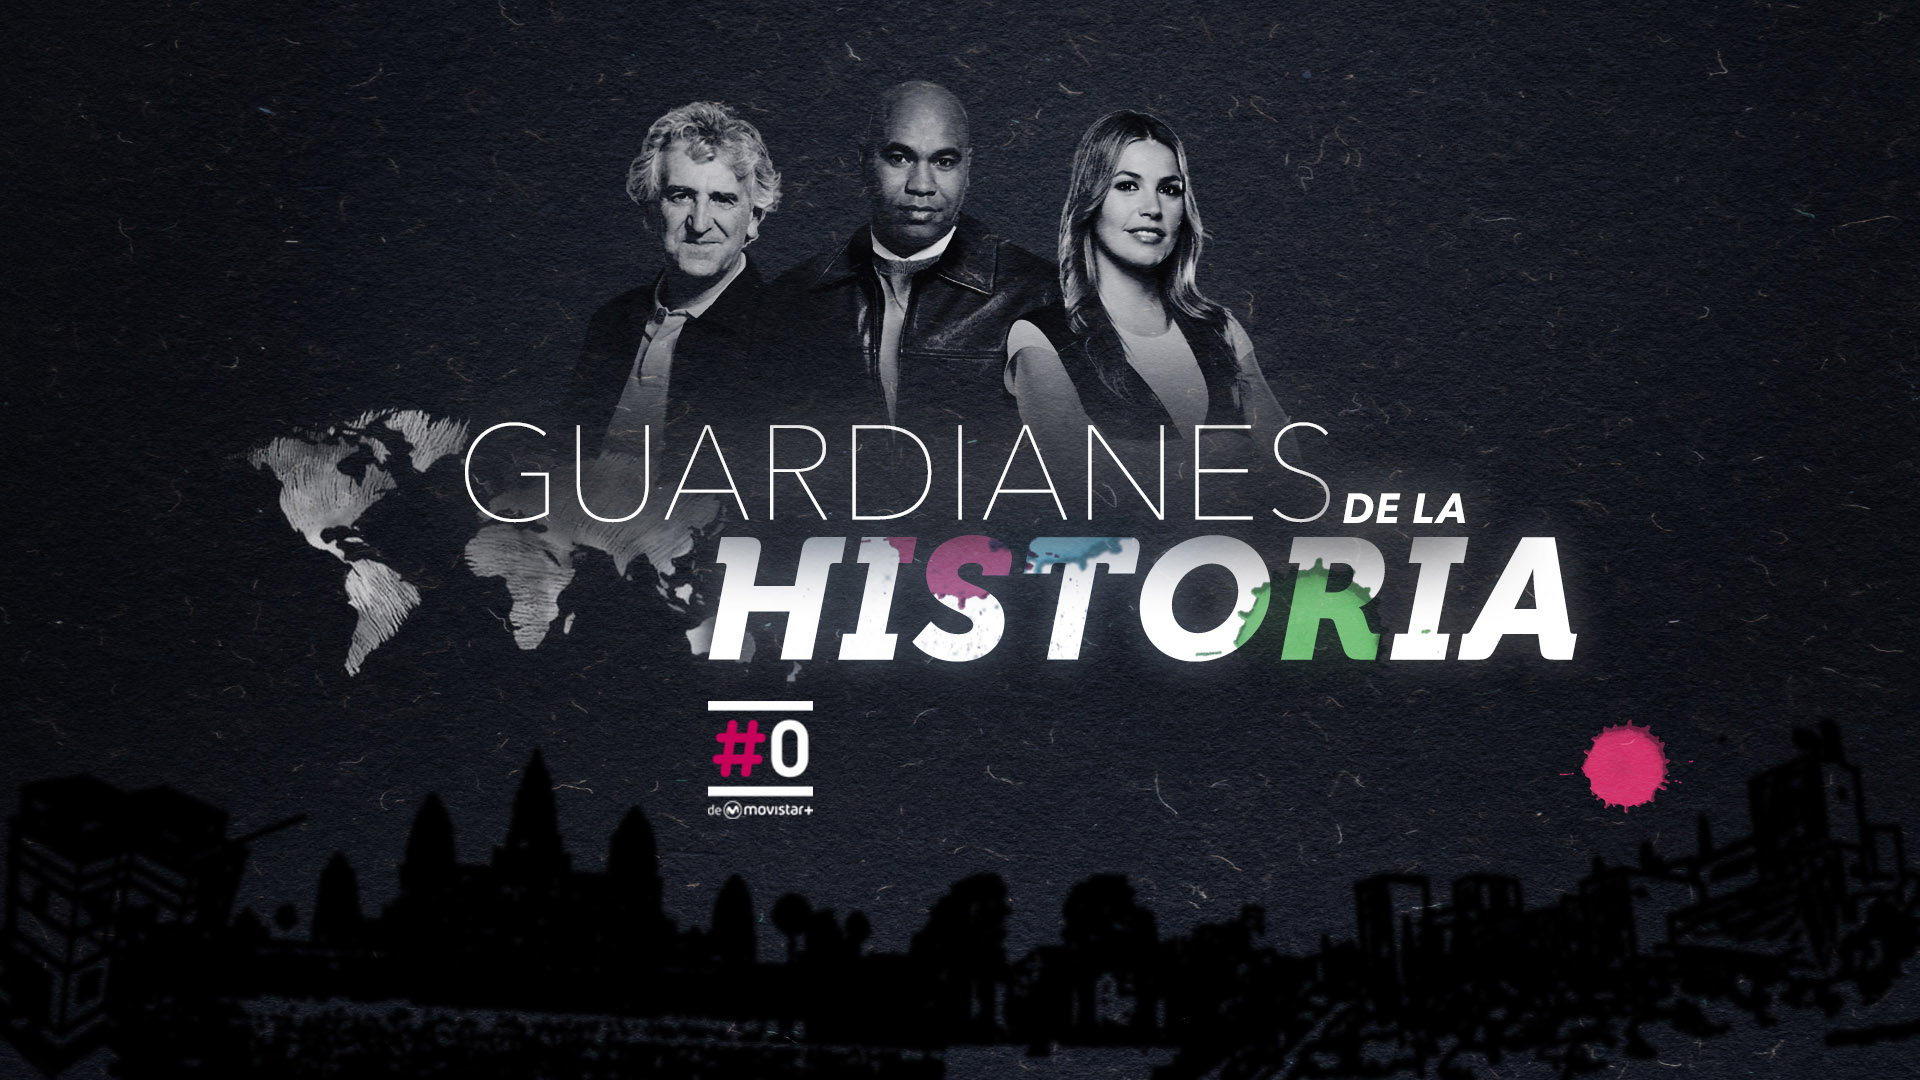 ‘Guardianes de la Historia’, nuevo programa de #0